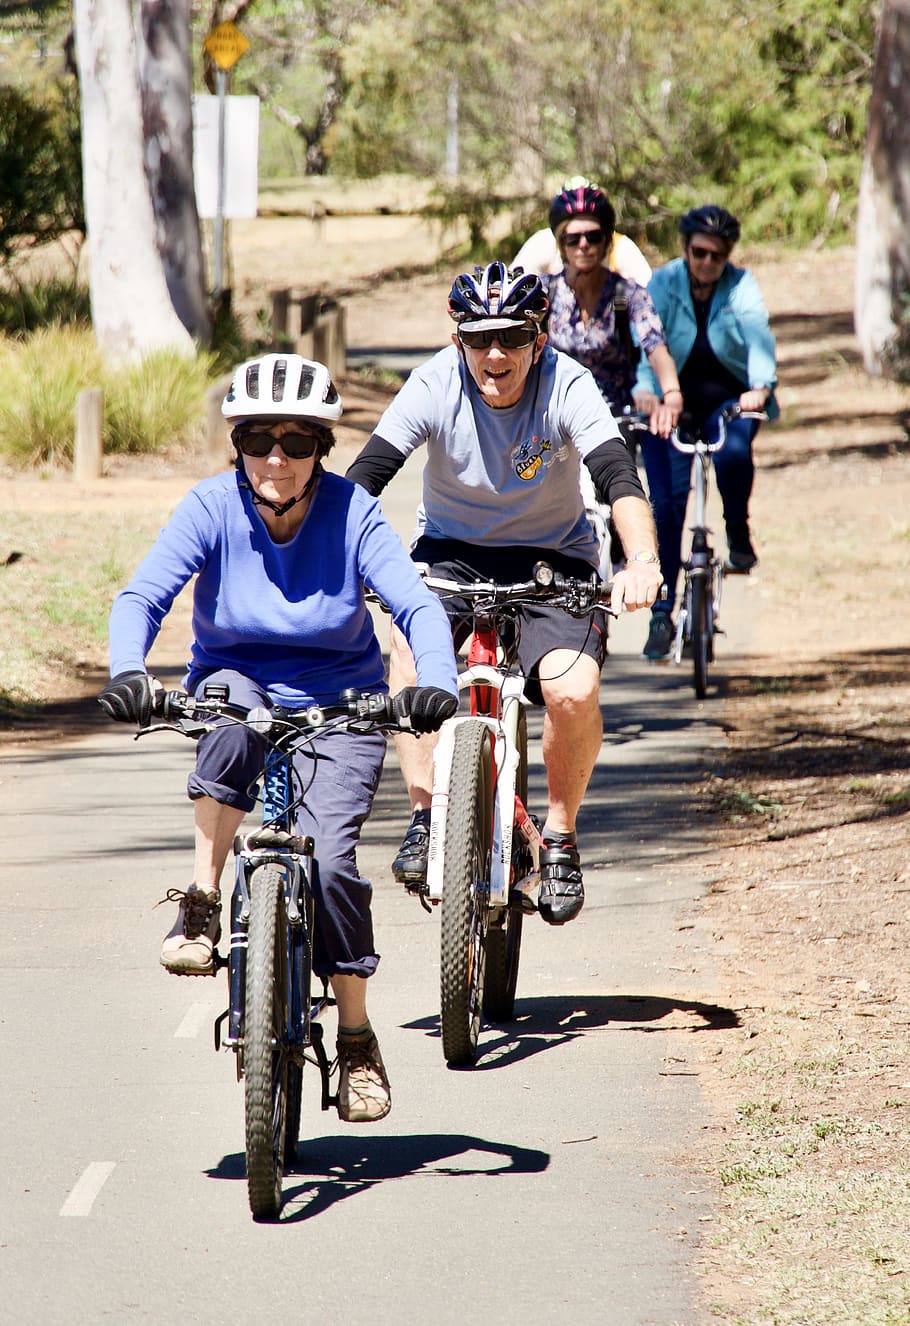 ciclistas, bicicletas, ciclismo, diversión, amigos, actividad, ocio, saludable, al aire libre, bicicleta